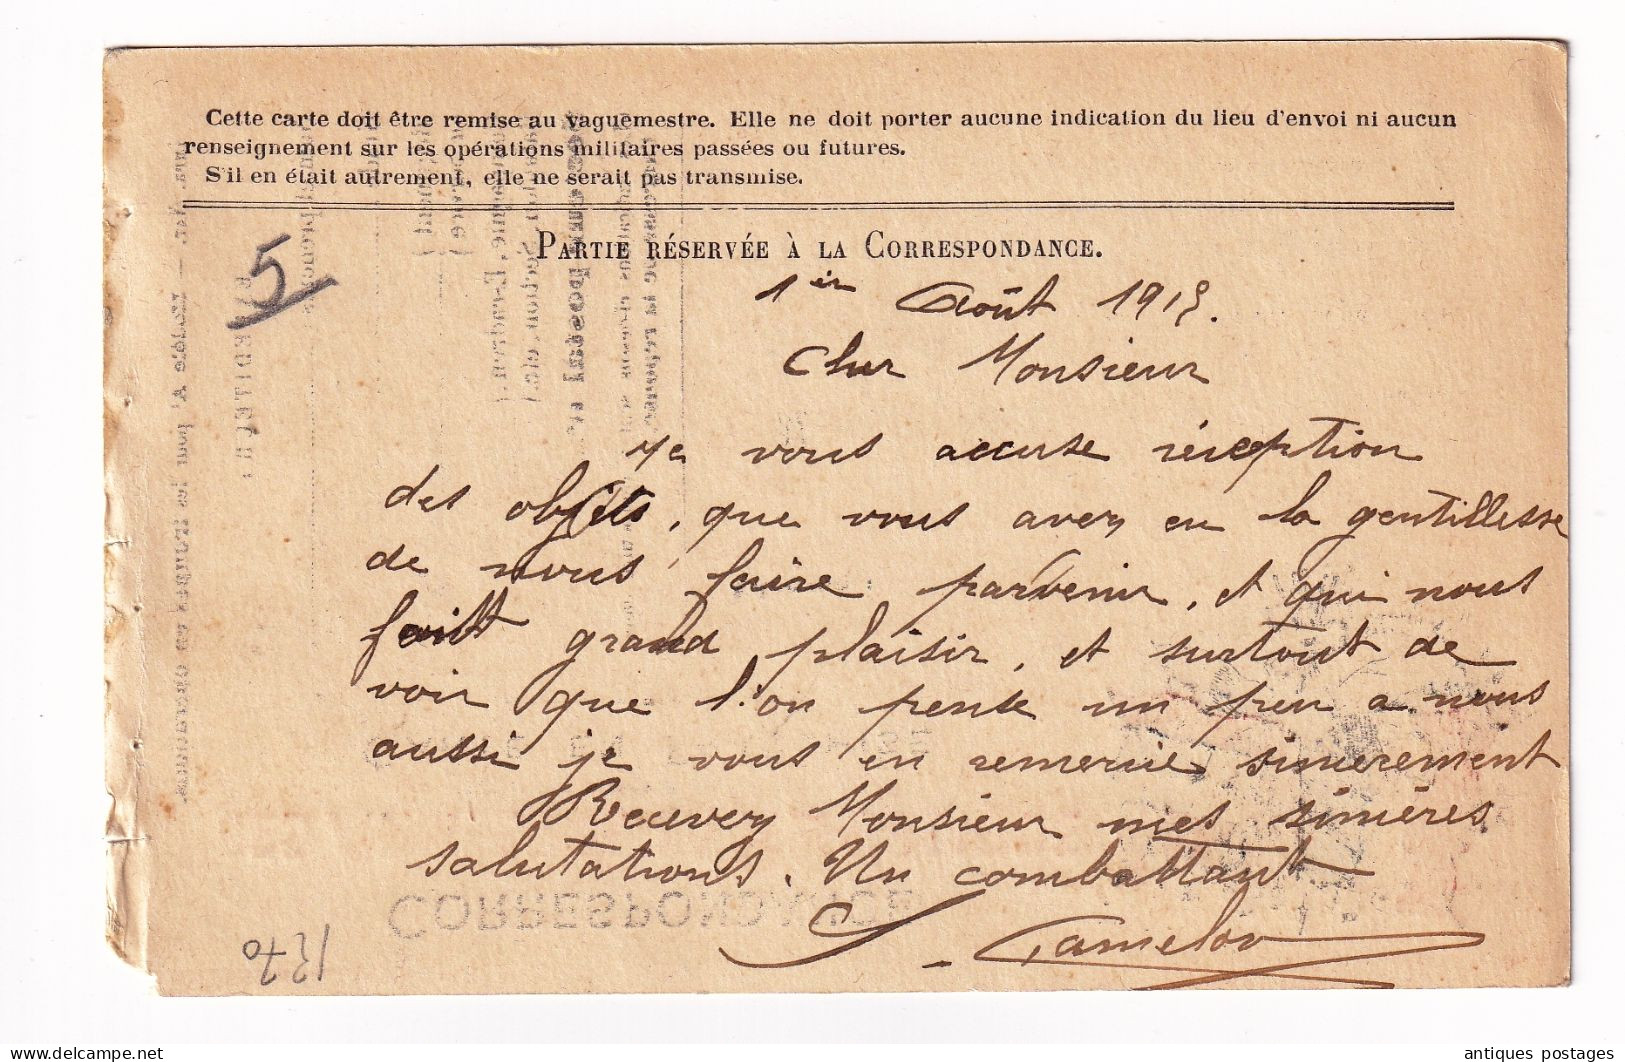 WW1 Carte 1915 Première Guerre Mondiale 104e Régiment Zouaves Secteur Postal 132 Gamelon - WW I